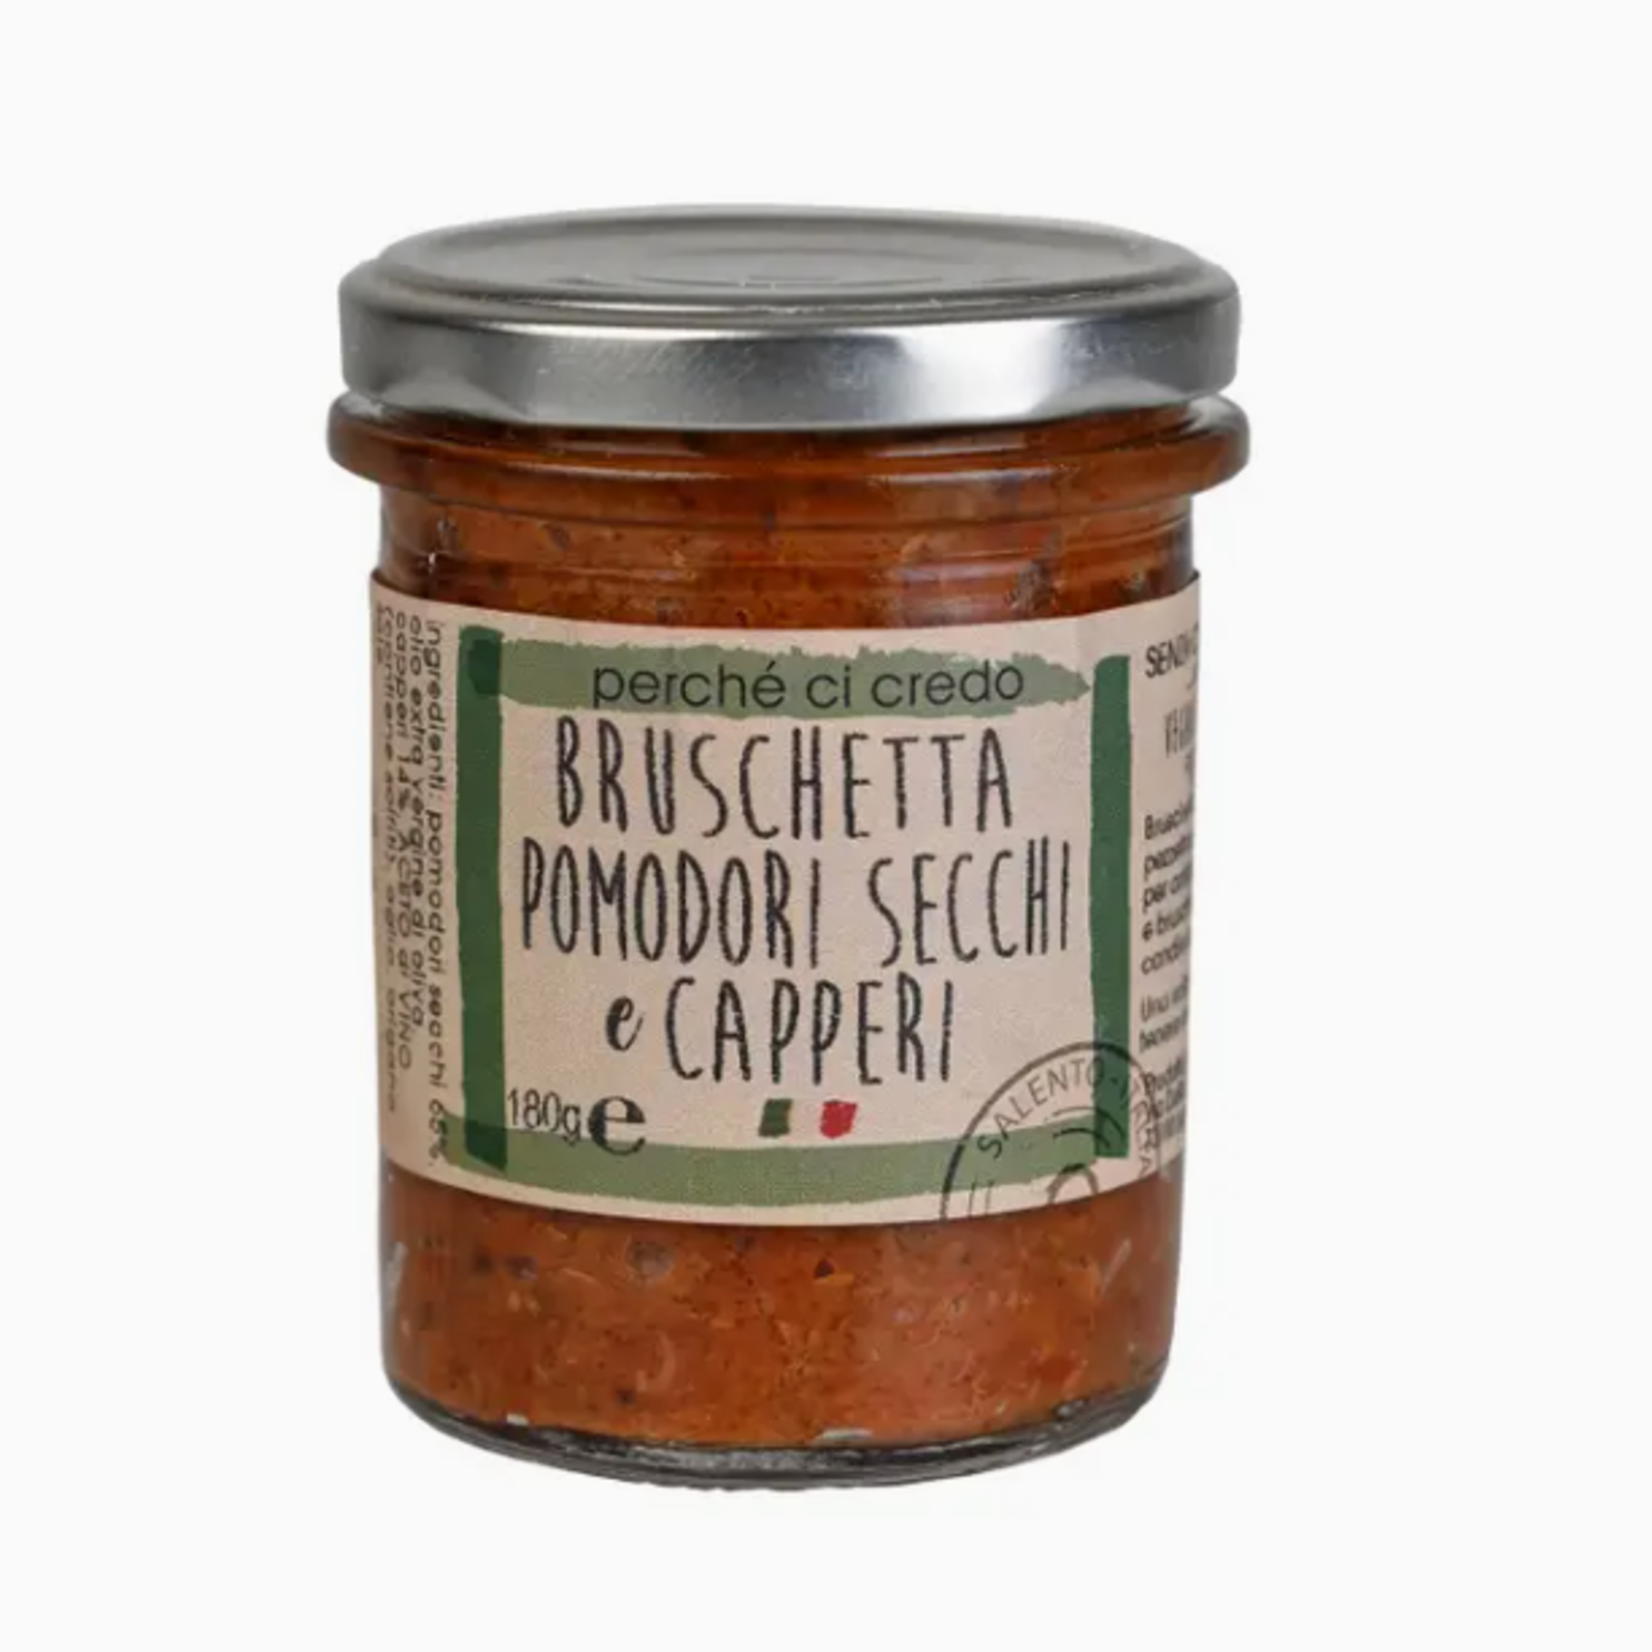 Zia Pia Imports Sun-Dried Tomato and Caper Bruschetta by Perche Ci Credo